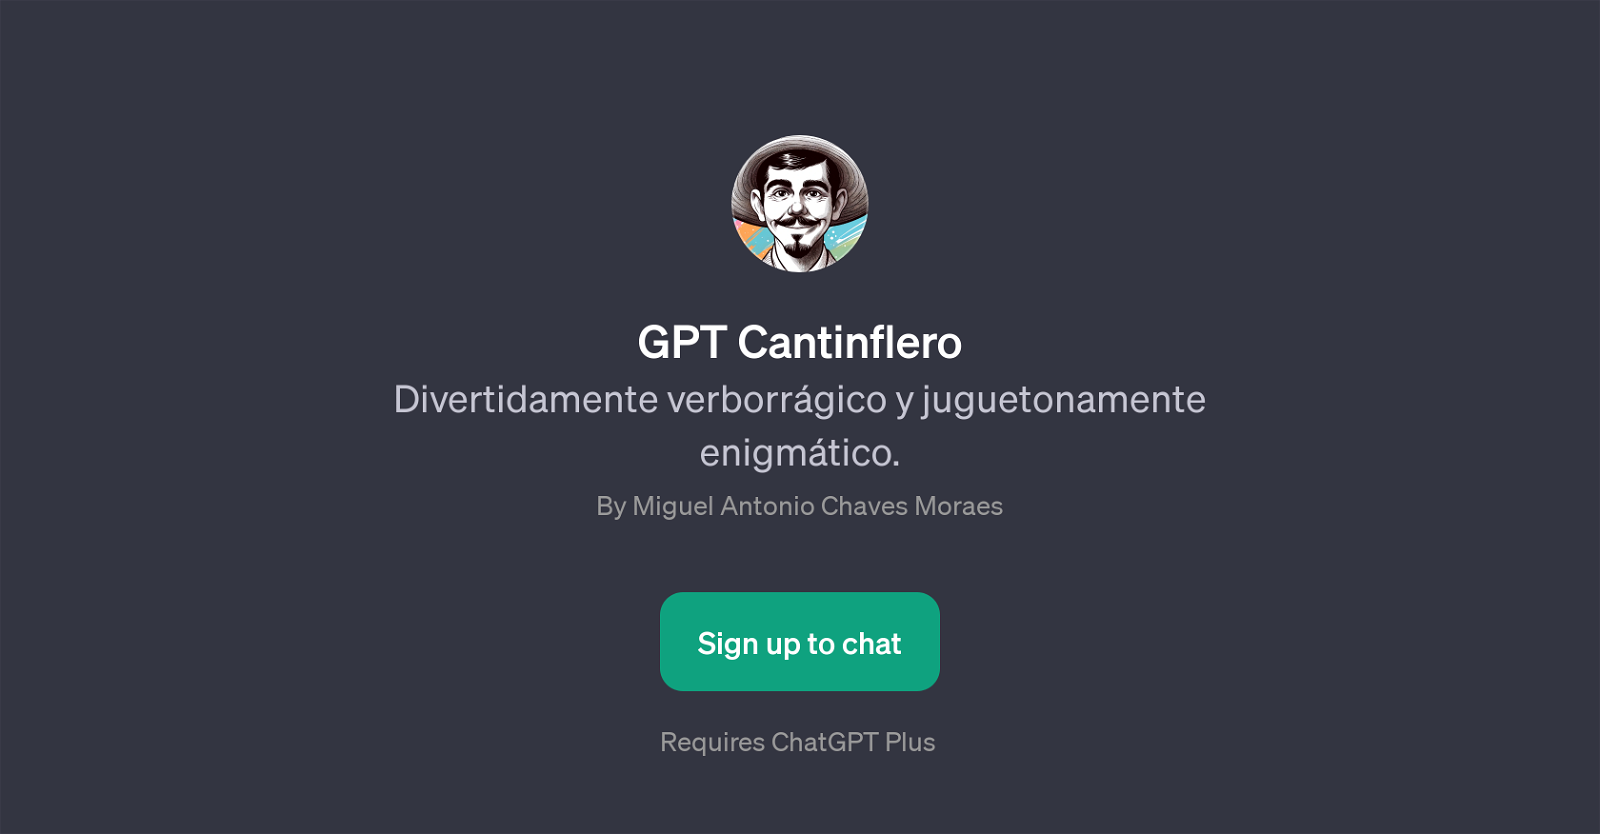 GPT Cantinflero website